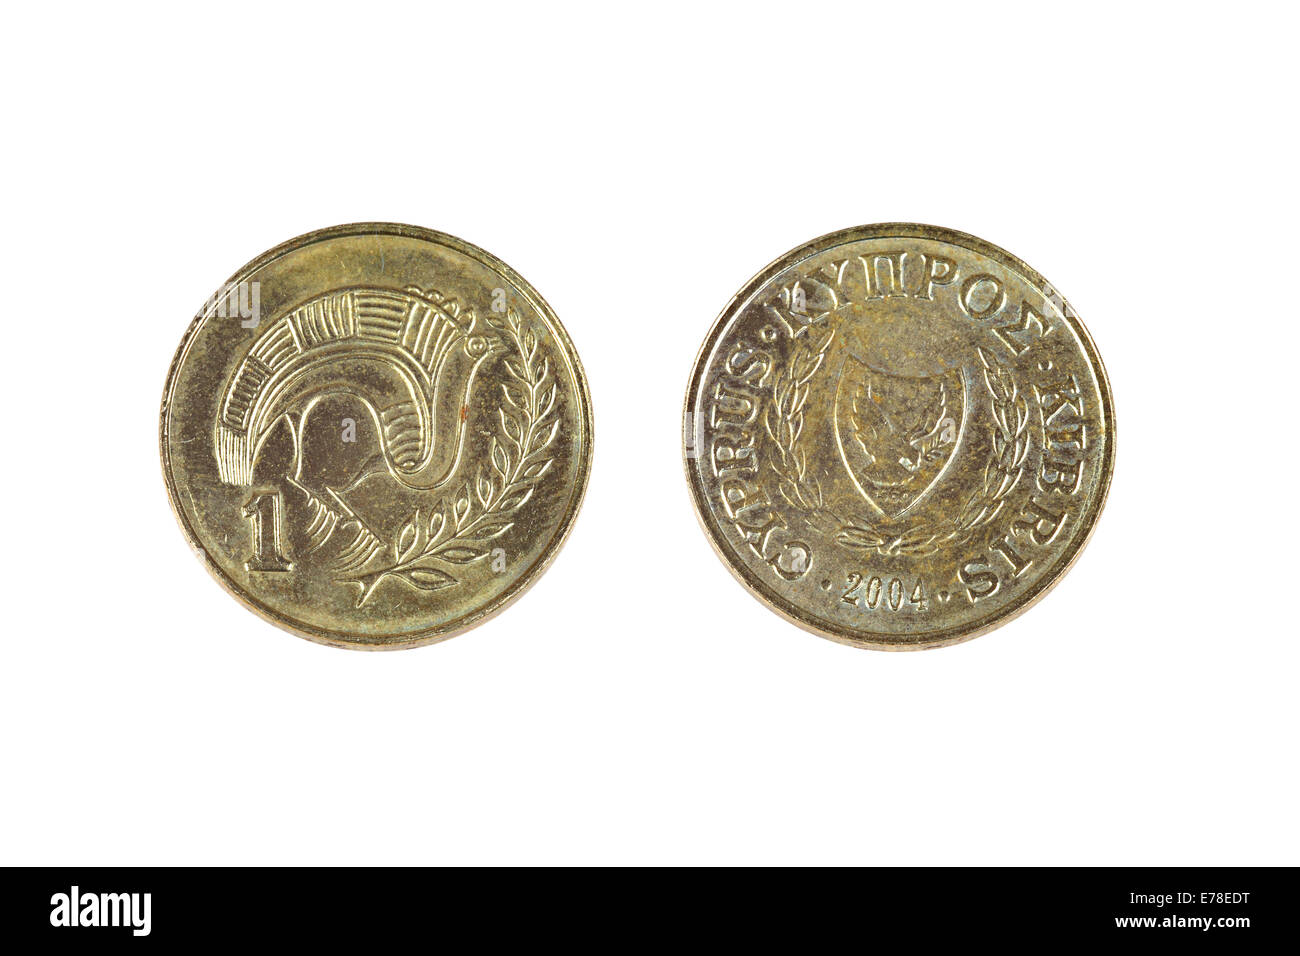 Alten schäbigen ein-Cent-Münze aus Zypern. Alter Artikel gestrichen Sie  1/100 der Zypern-Pfund. Beidseitig isoliert auf weißem Hintergrund  Stockfotografie - Alamy